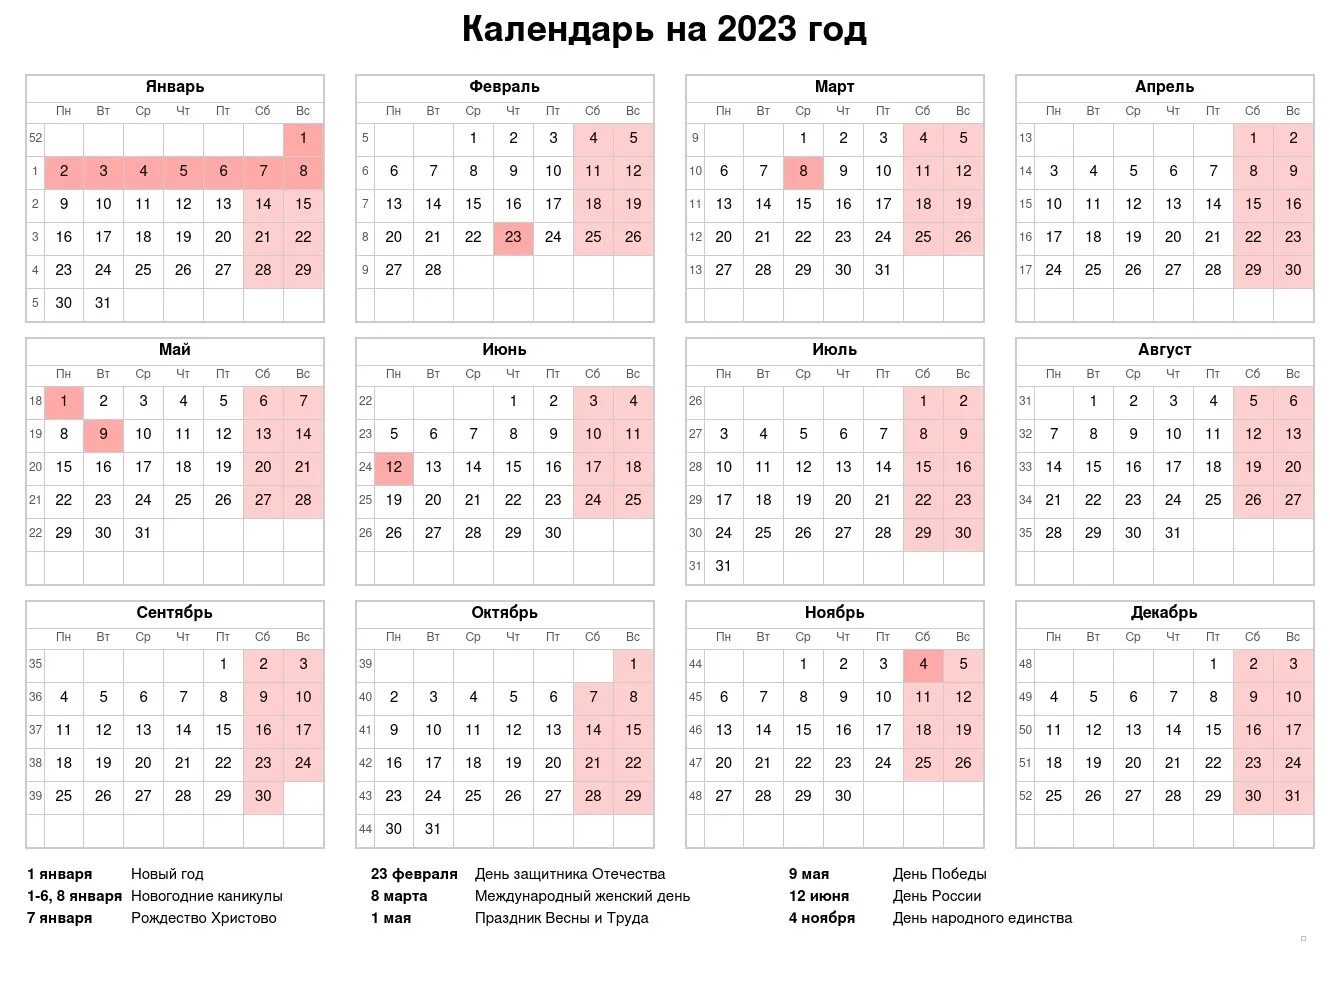 Норма часов 2022. Производственный календарь на 2022 год с праздниками и выходными. Выходные и праздники 2022 года в России нерабочие дни. Календарь выходных и праздничных дней на 2022 год в России. Праздничные и выходные дни в 2022 году в России Министерство труда.